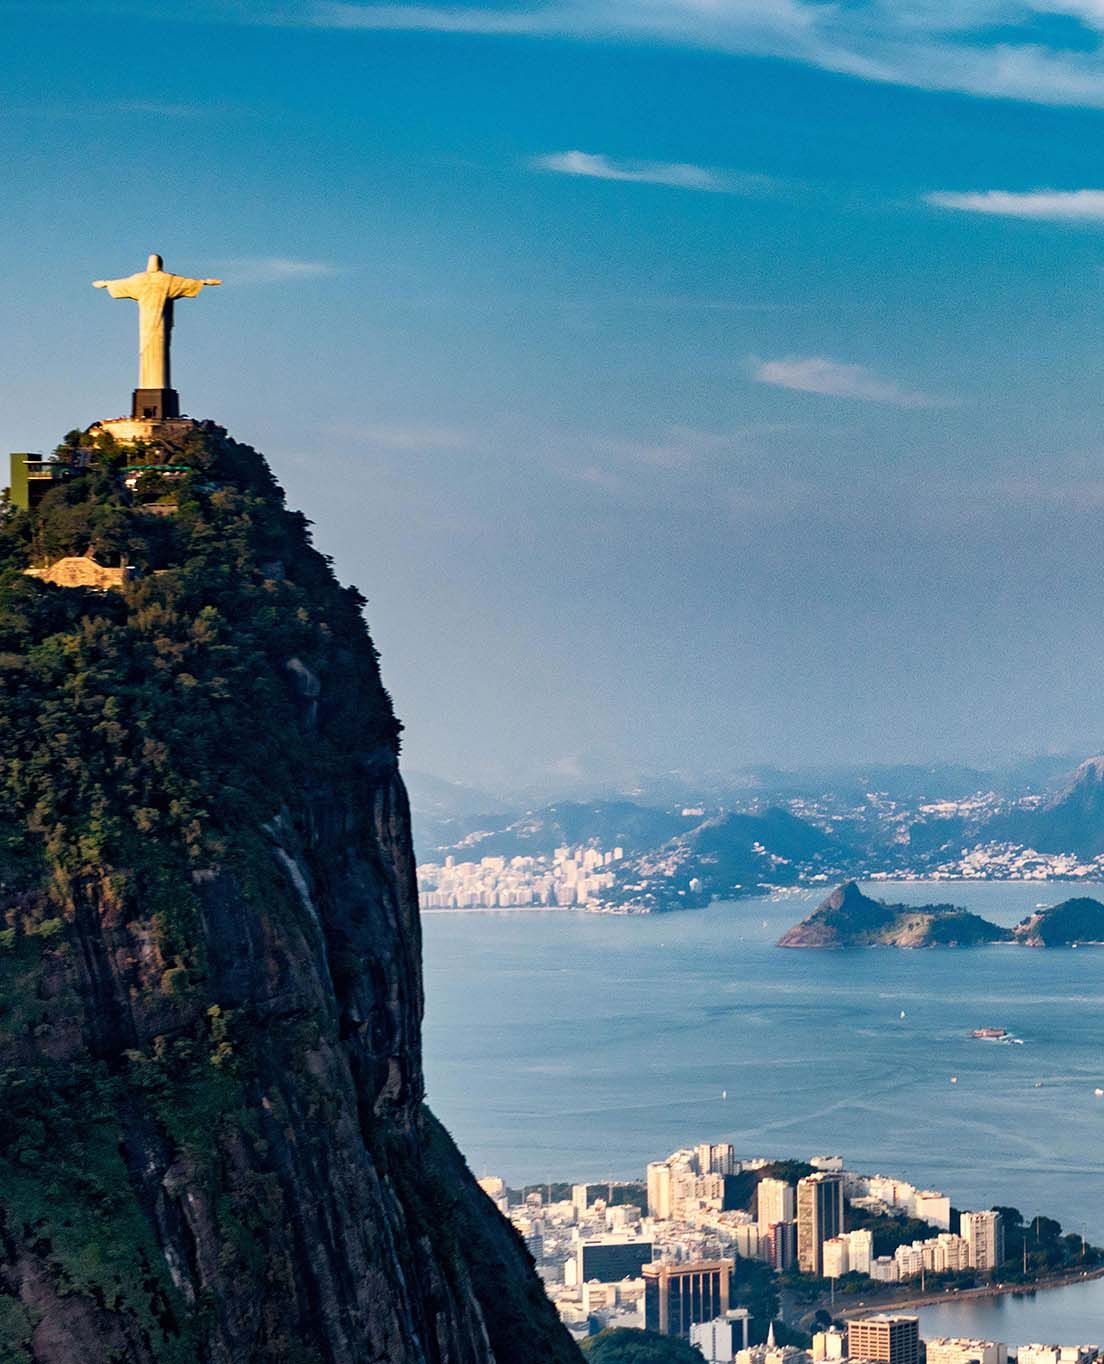 Brazil at a glance